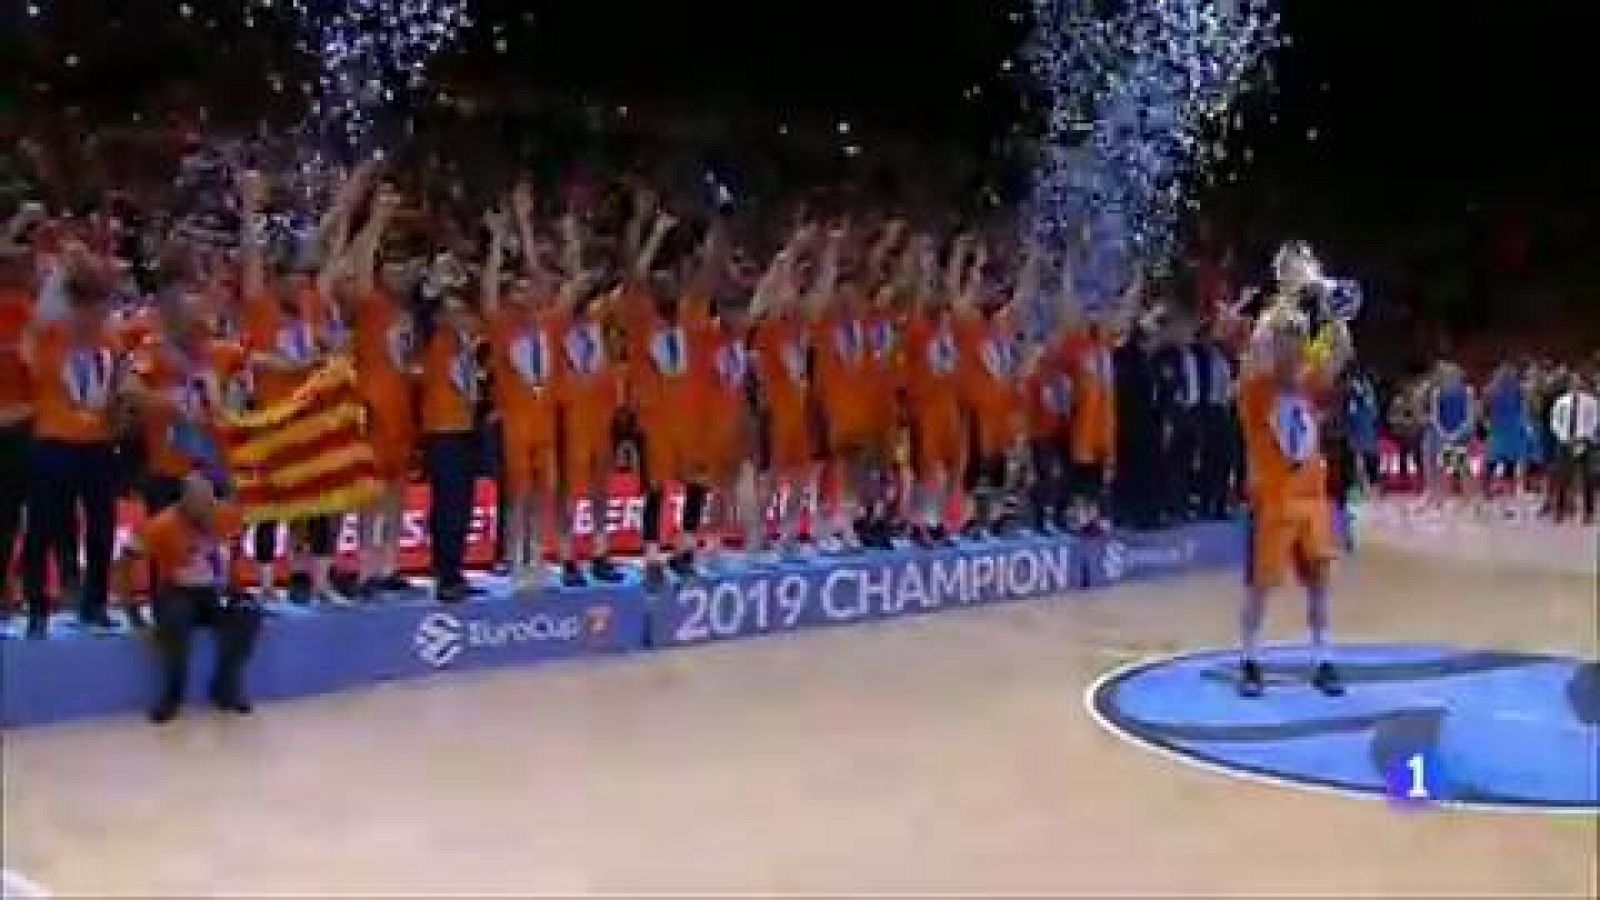 Valencia Basket ha conseguido su cuarto título de la Eurocup tras vencer a Alba Berlín en el tercero y decisivo partido de la final por 89-63 que se ha disputado en La Fonteta, título que le da derecho además a disputar la temporada que viene la Euro